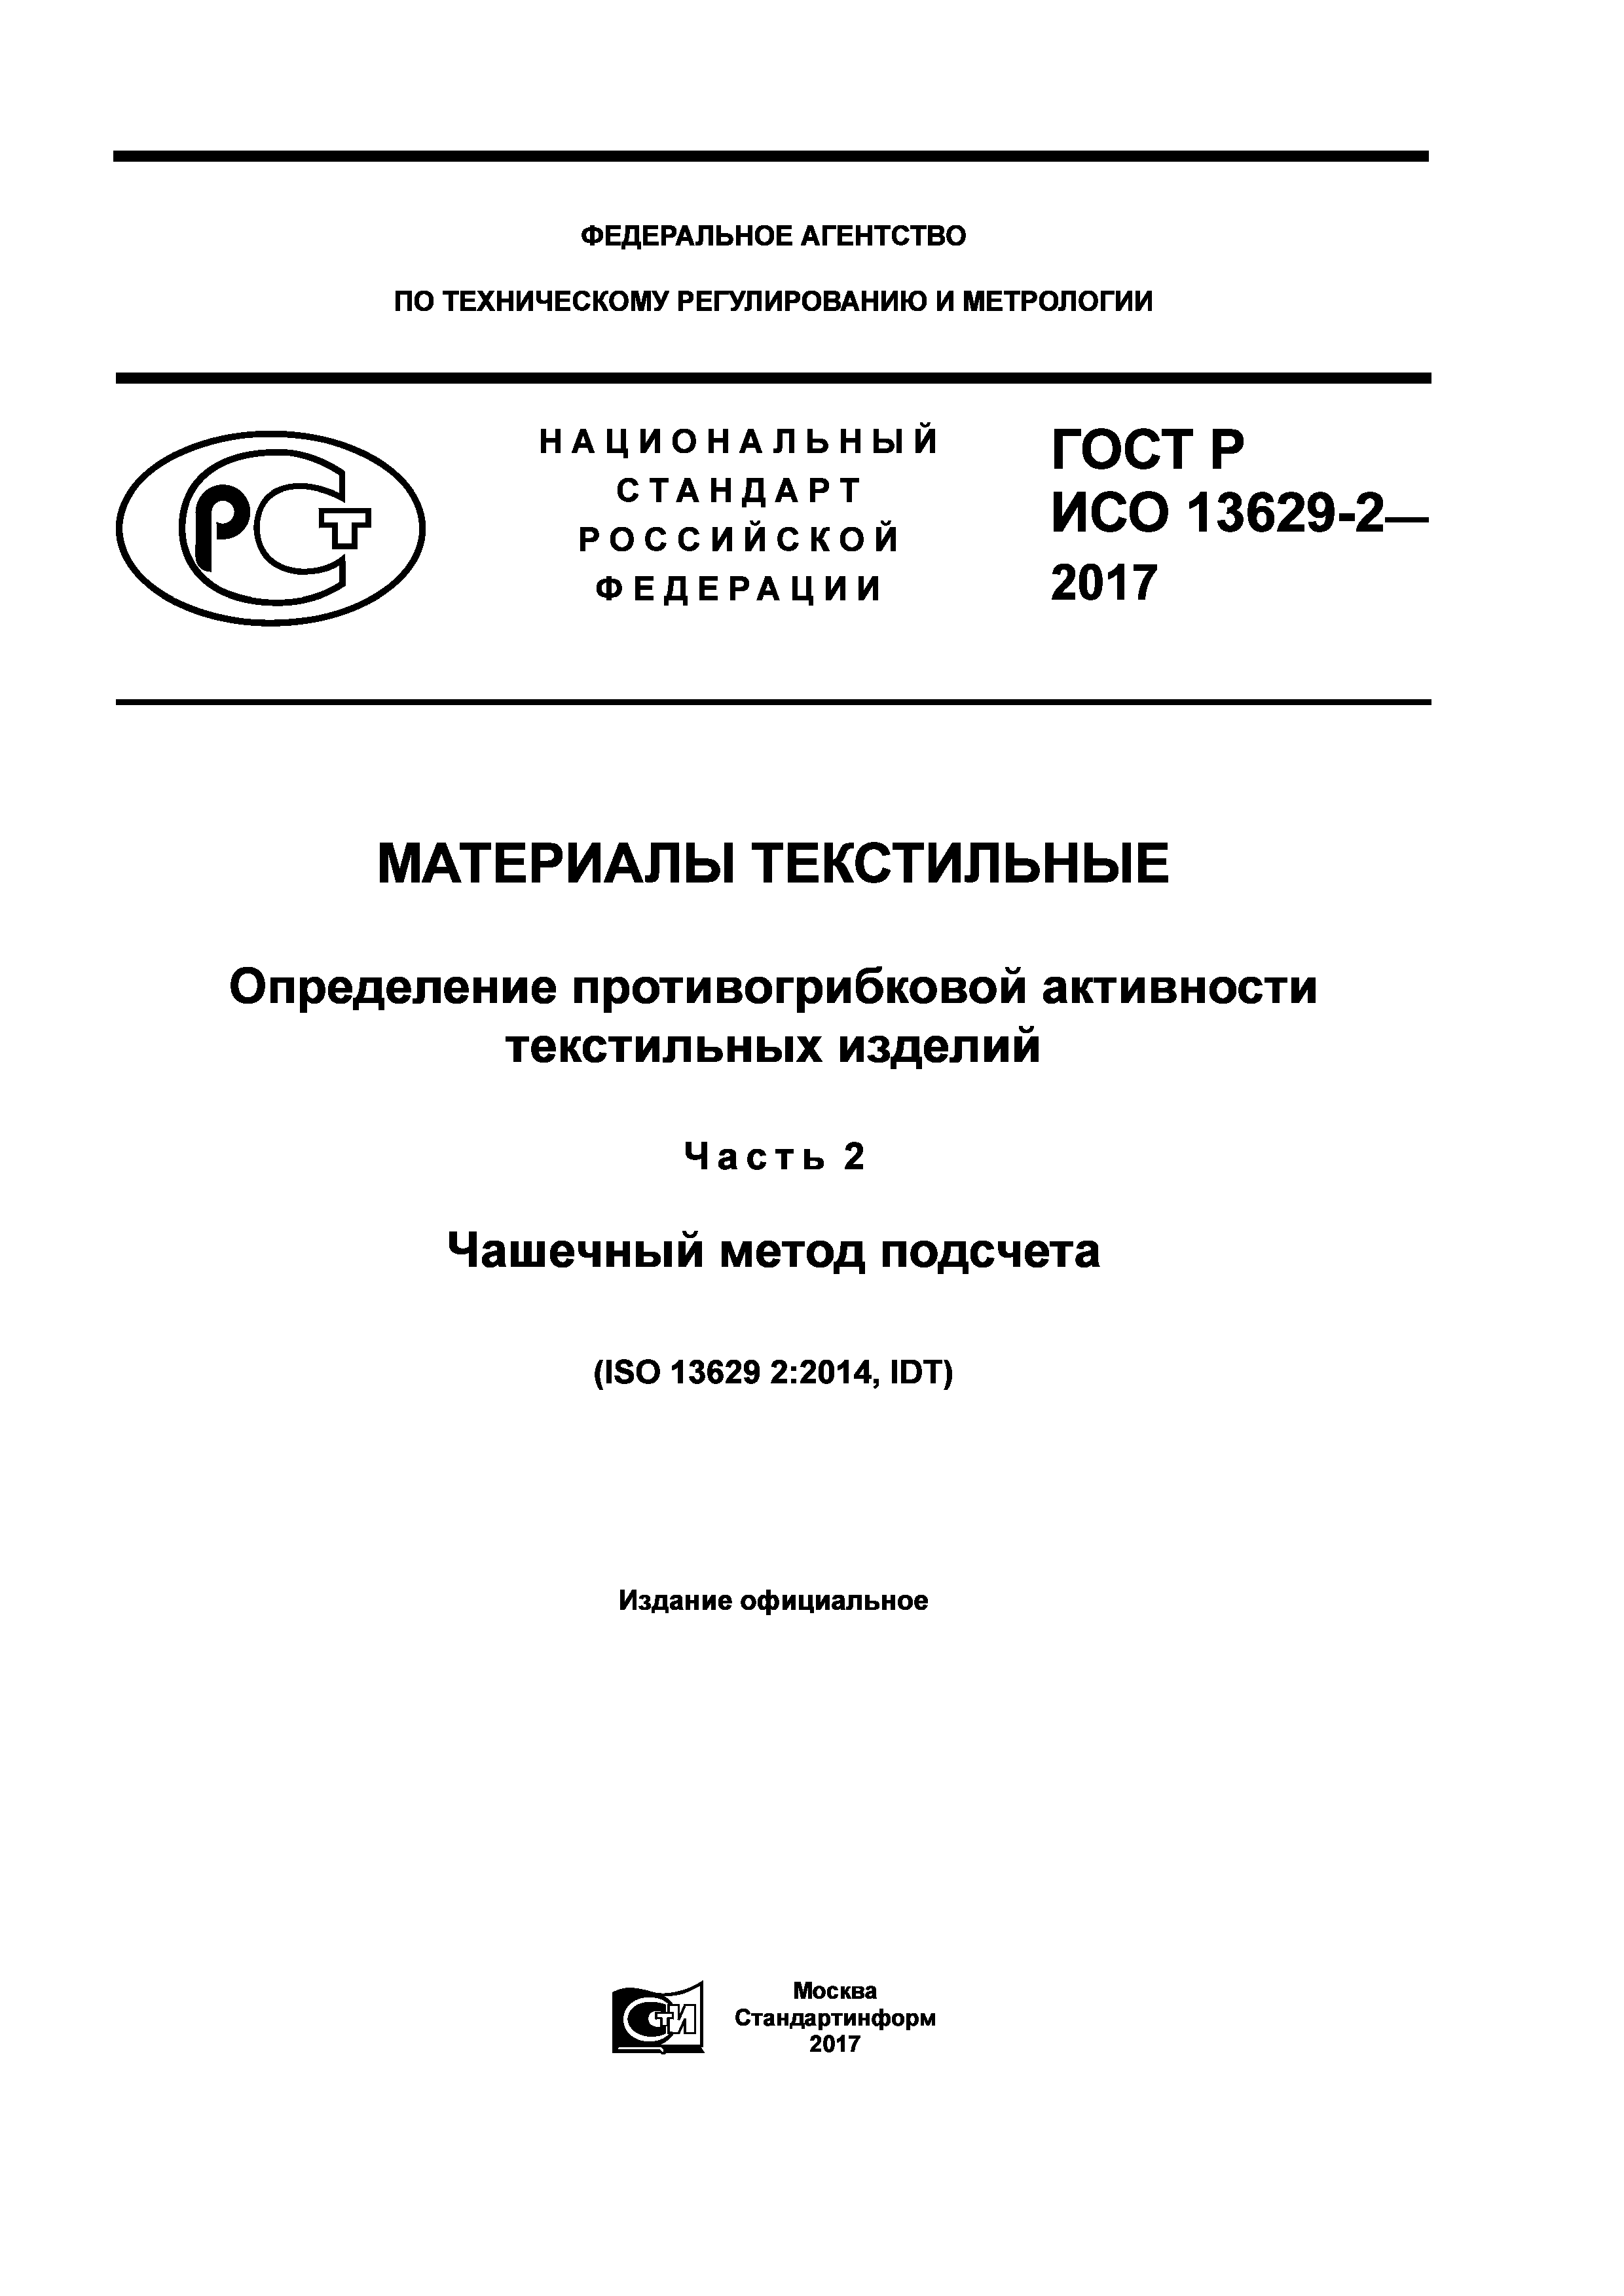 ГОСТ Р ИСО 13629-2-2017